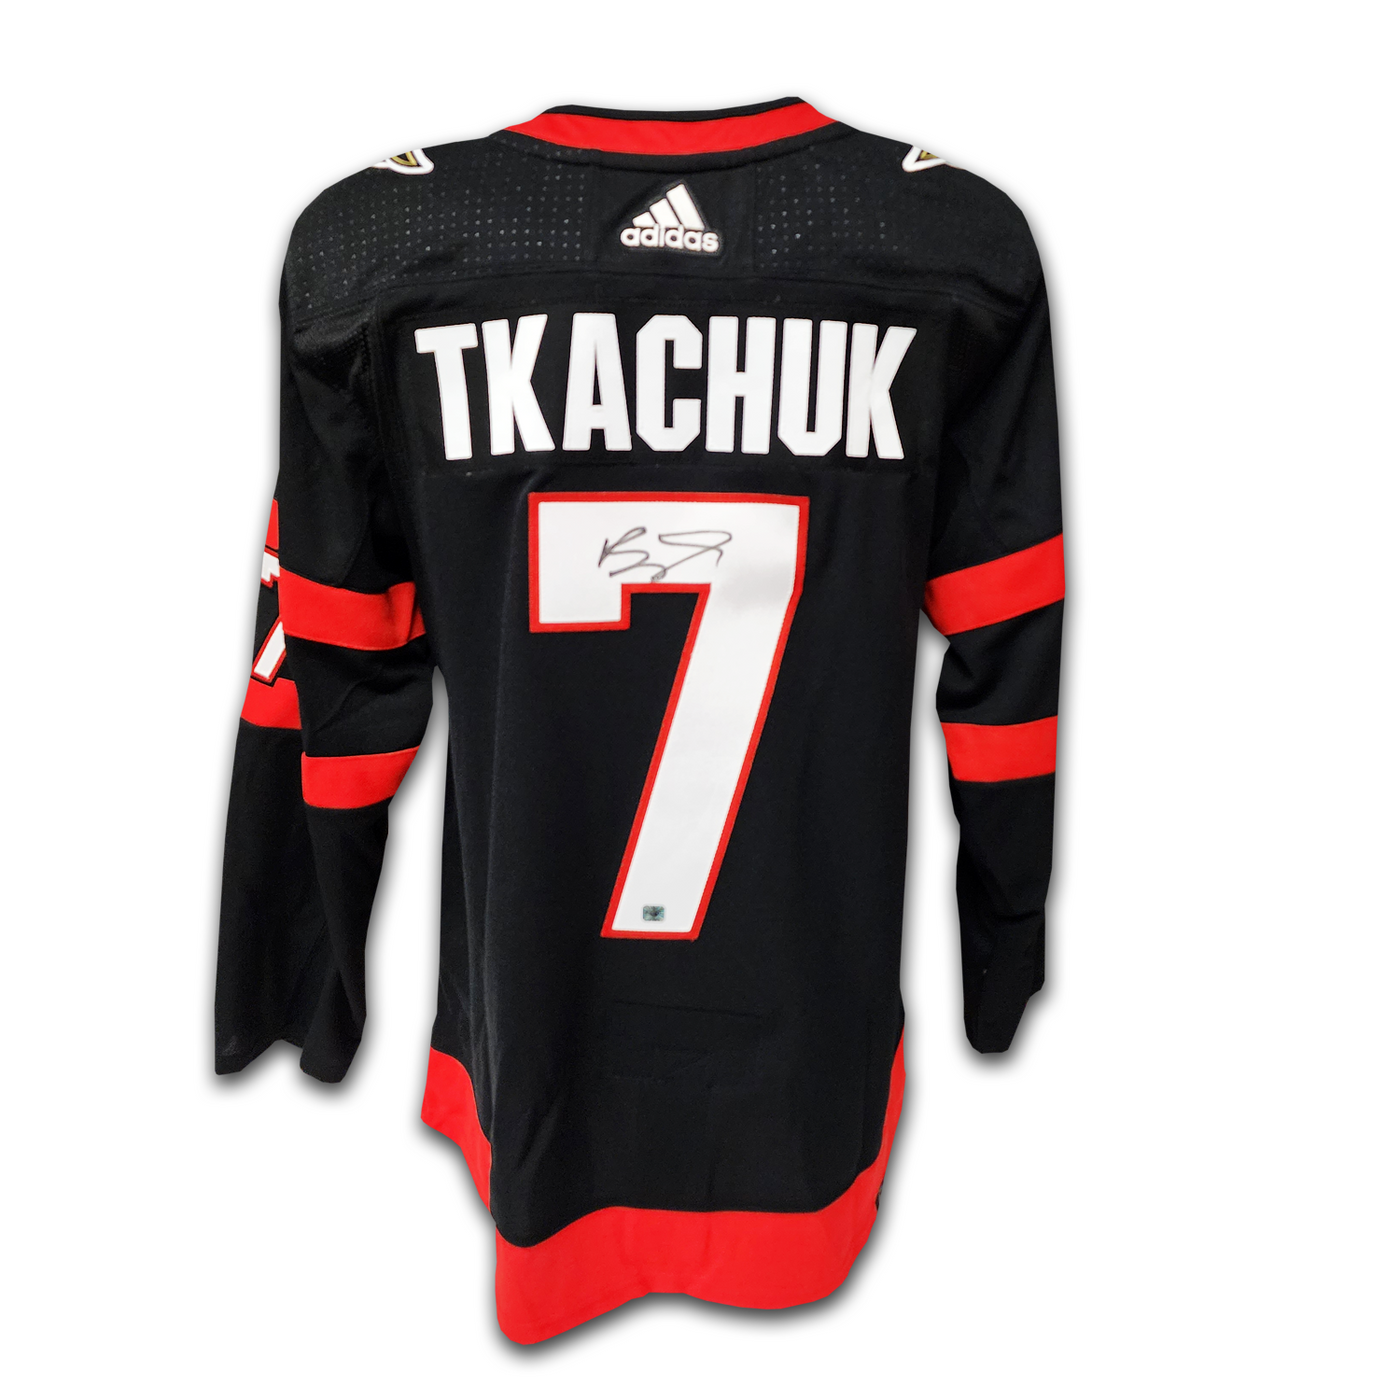 Brady Tkachuk Ottawa Senators Home Adidas Jersey